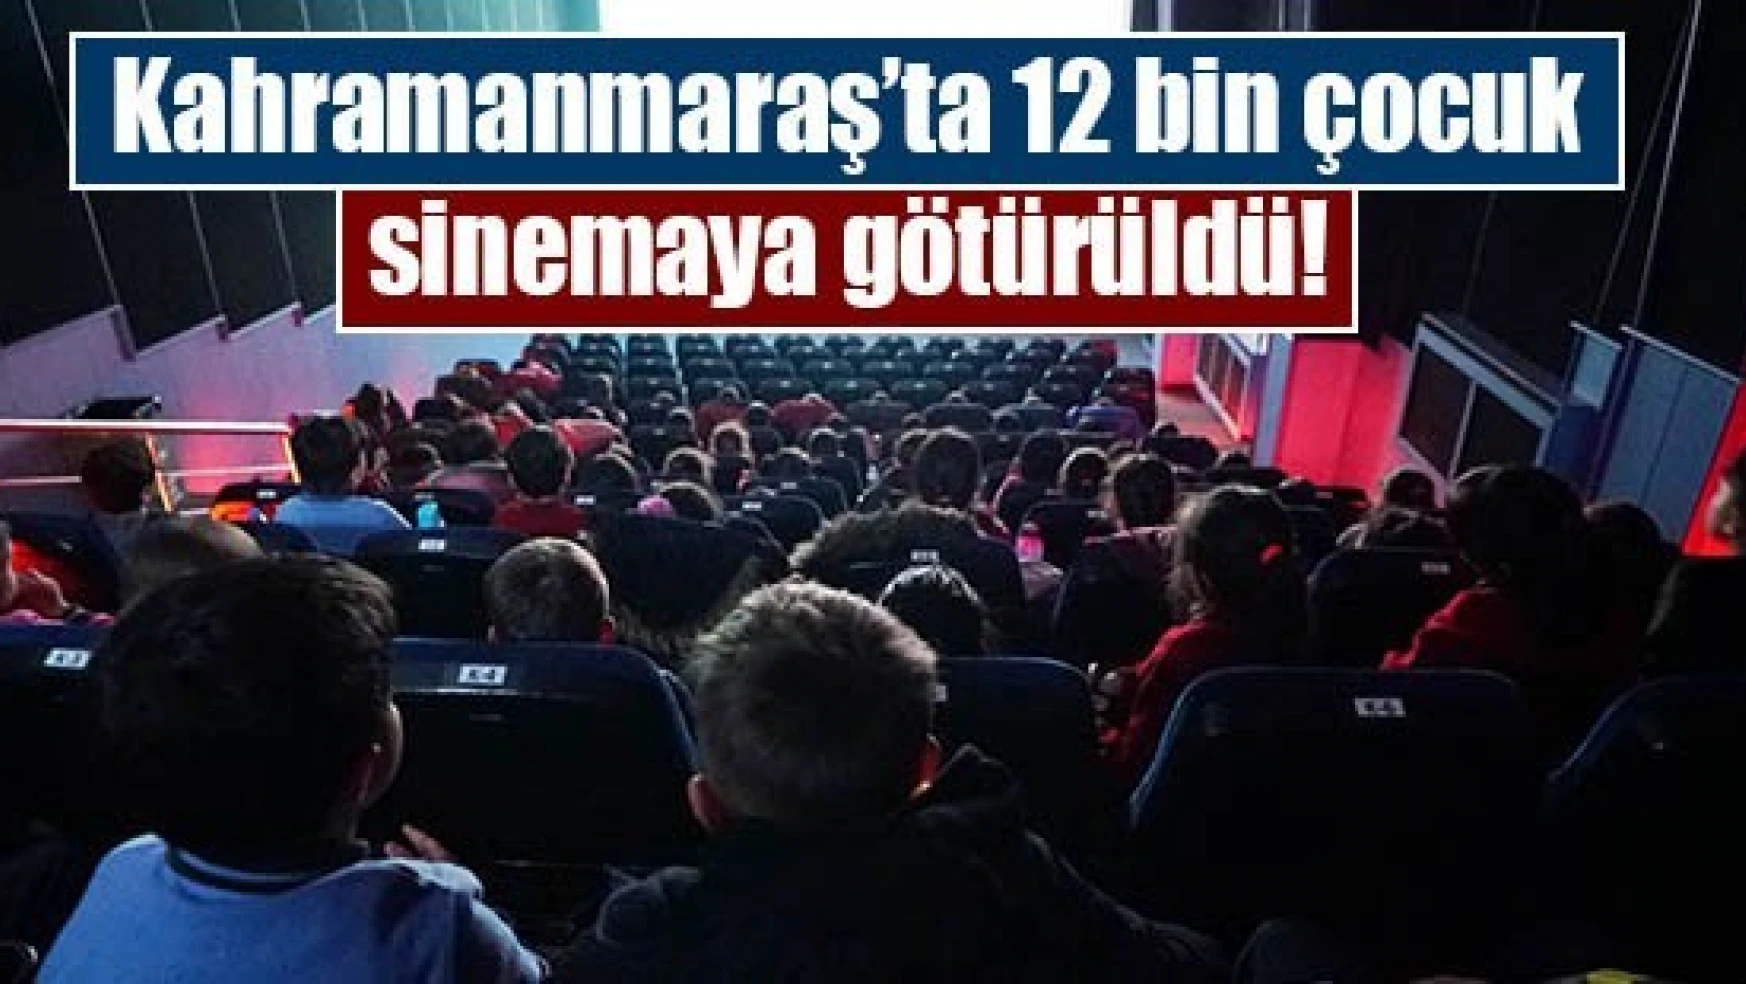 Kahramanmaraş'ta 12 bin çocuk sinemaya götürüldü!